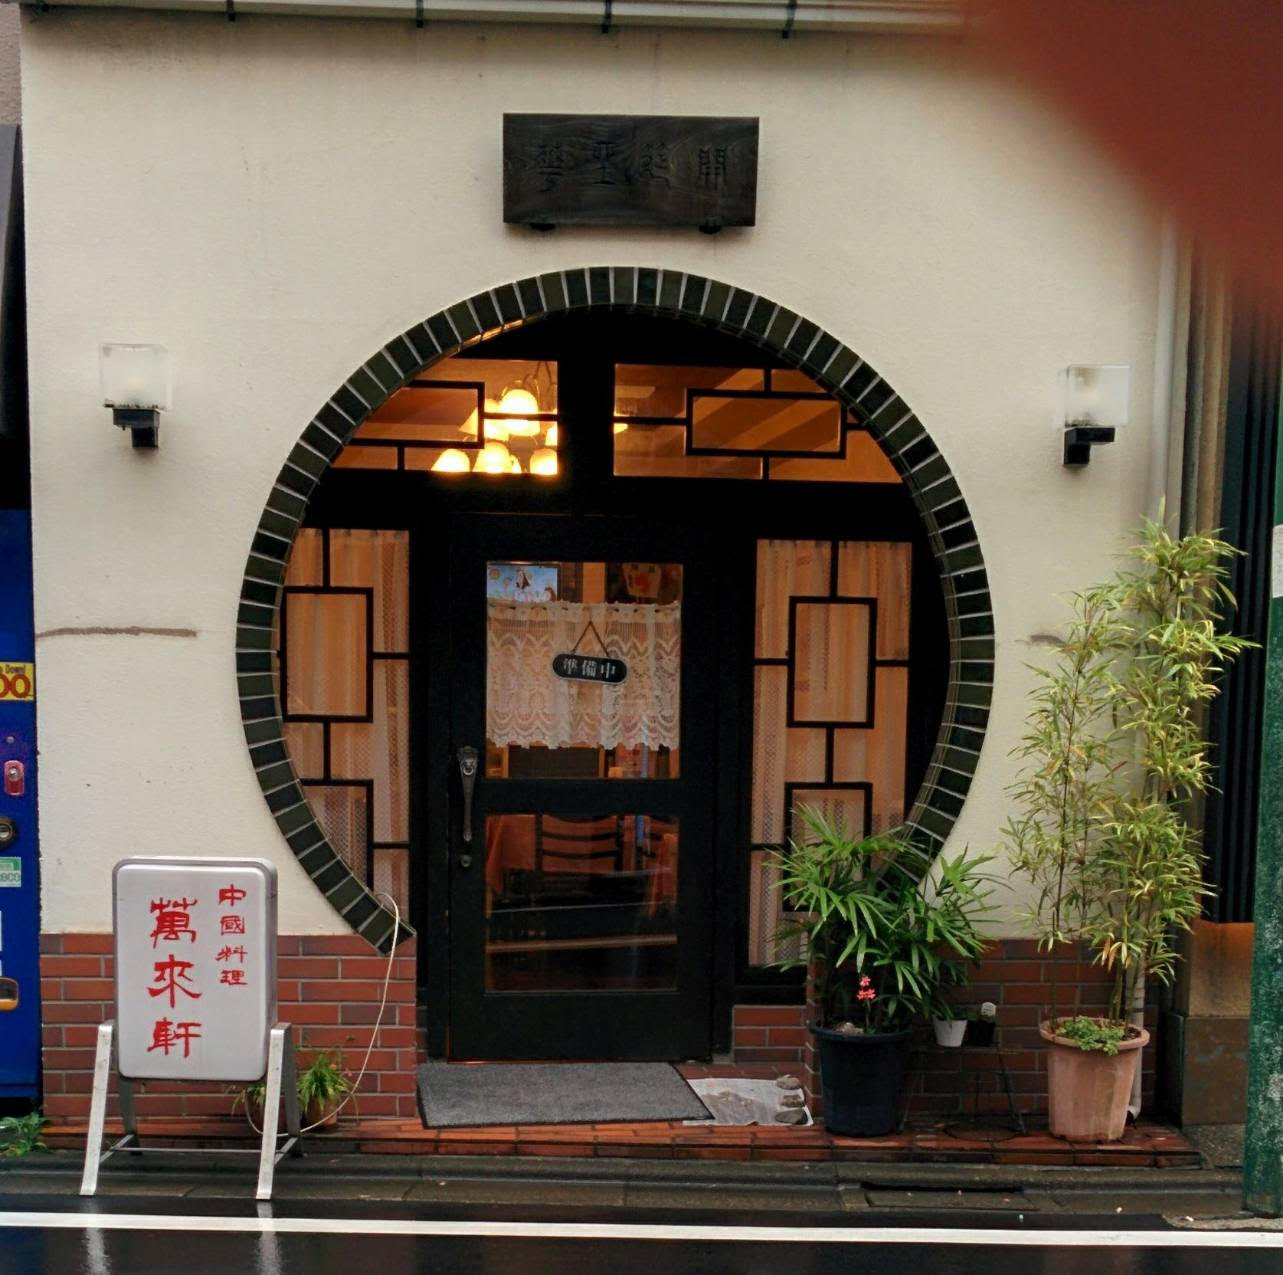 千歳烏山の中華料理店 萬来軒さんの食器販売会を開催いたします。